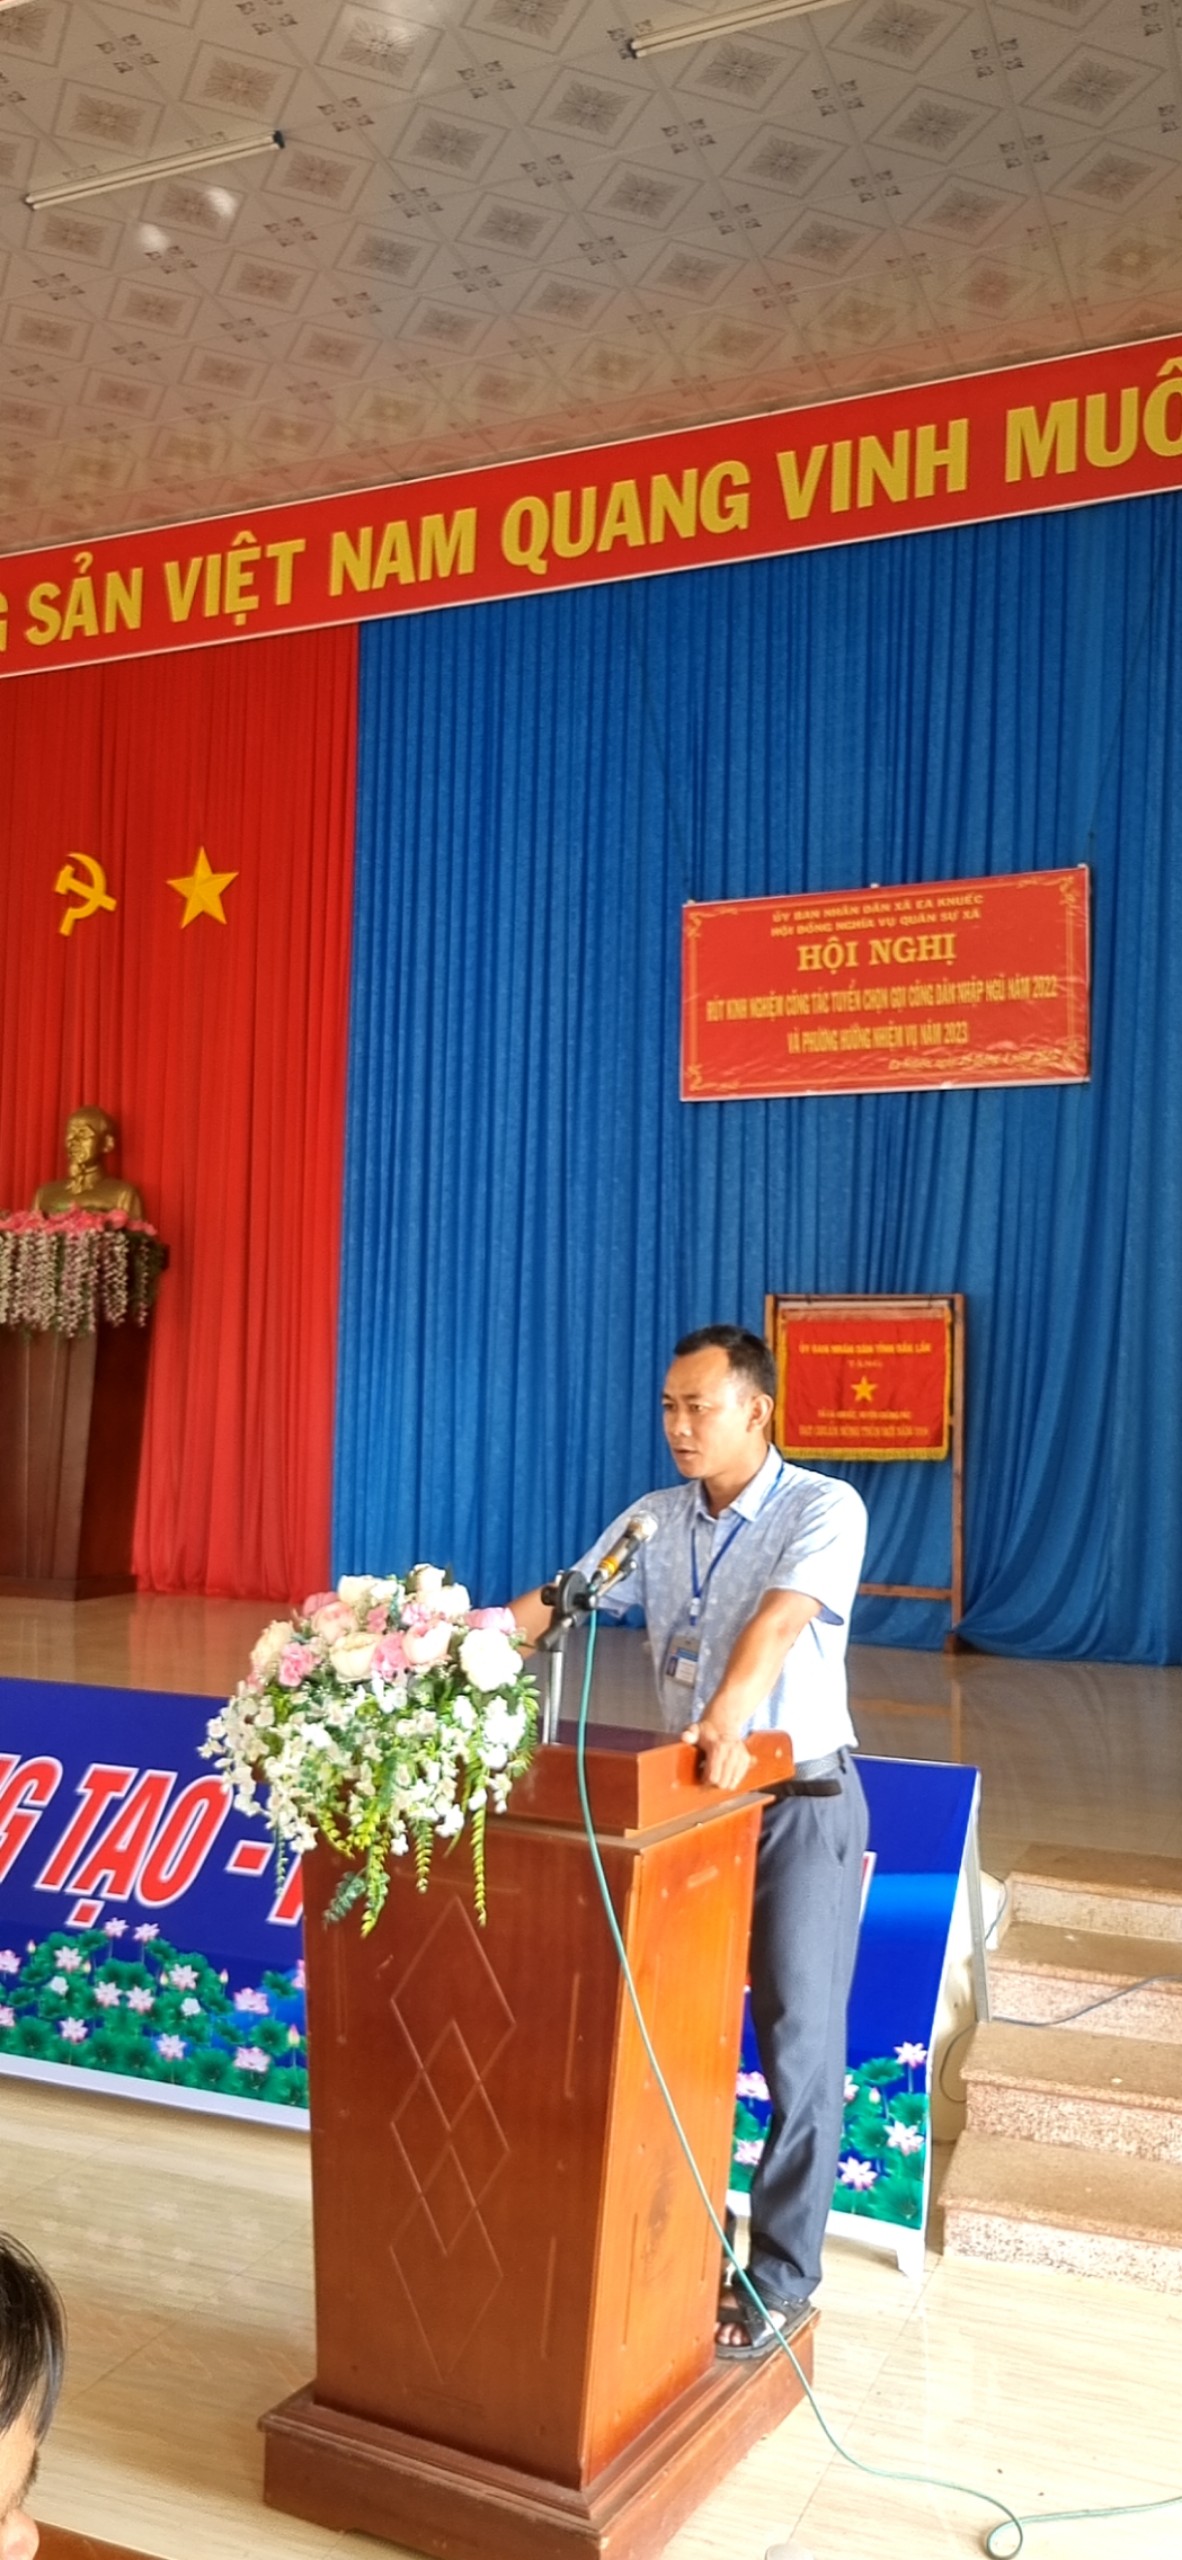 Đồng chí Nguyễn Xuân Hưng - HUV - Chủ tịch UBND - Chủ tịch Hội đồng nghĩa vụ quân sự  xã Ea Knuếc phát biểu khai mạc hội nghị